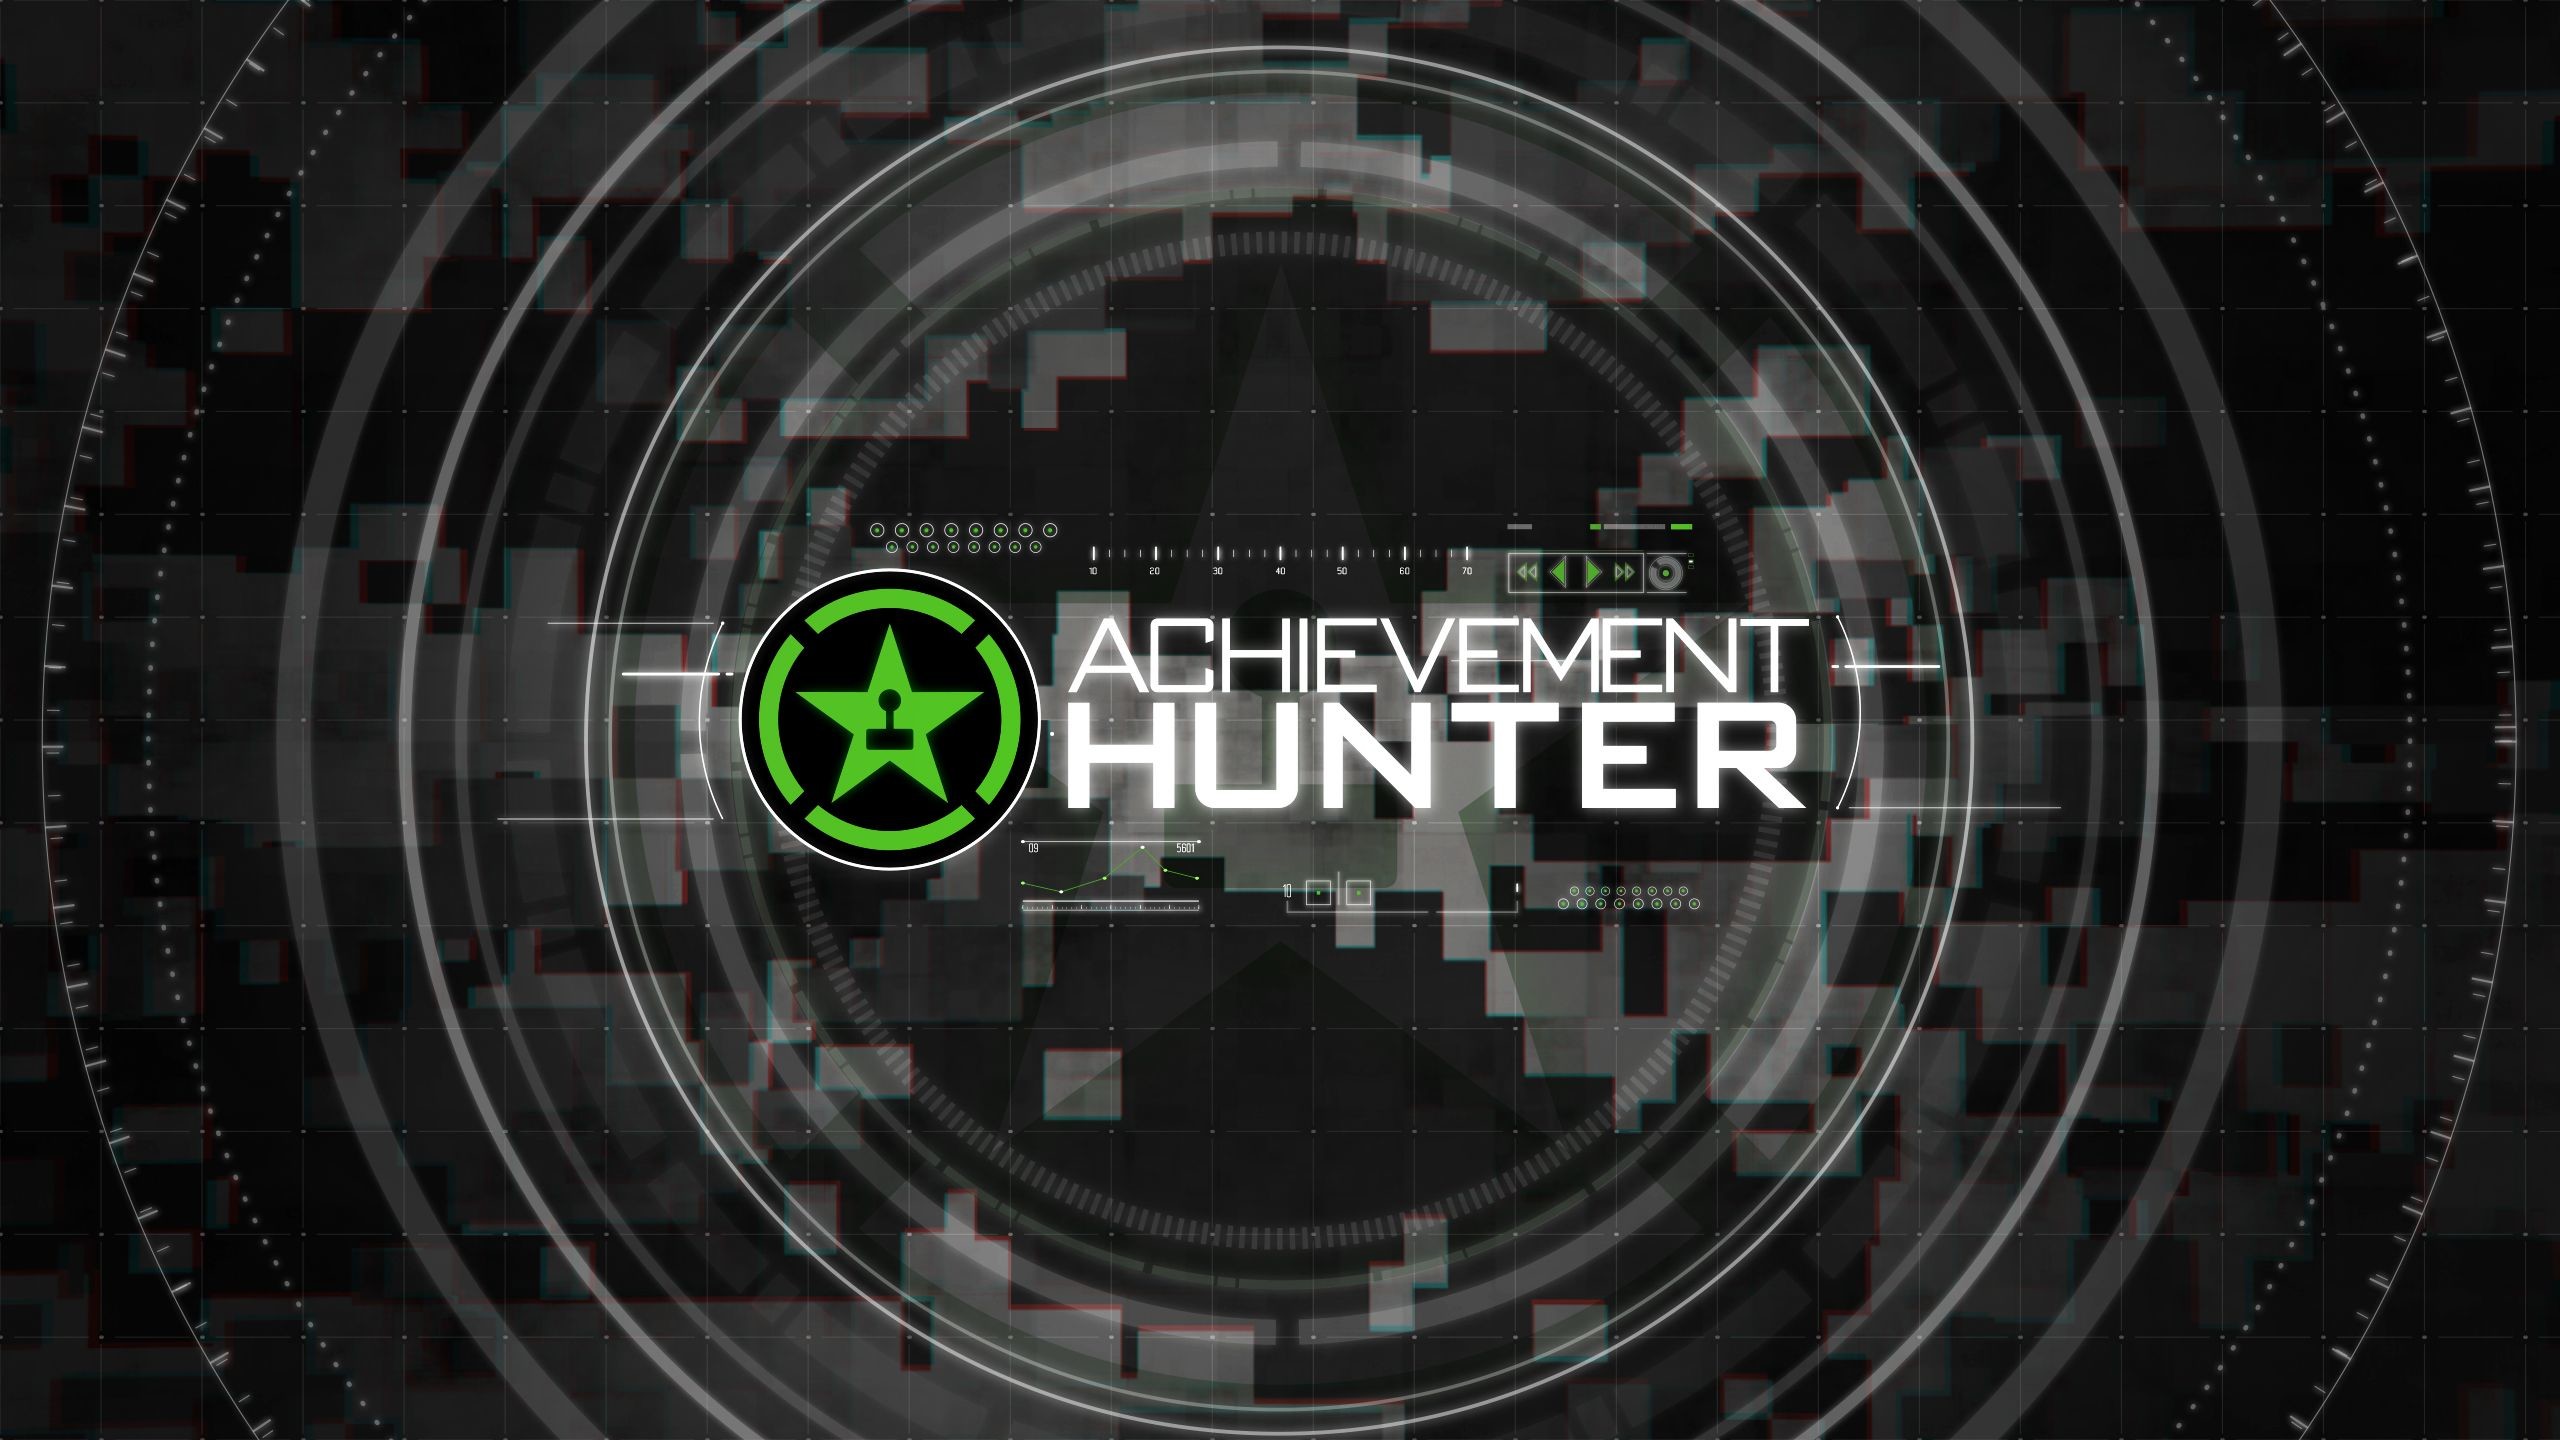 2560x1440 Achievement Hunter Xbox One Wallpaper - ModaFinilsale